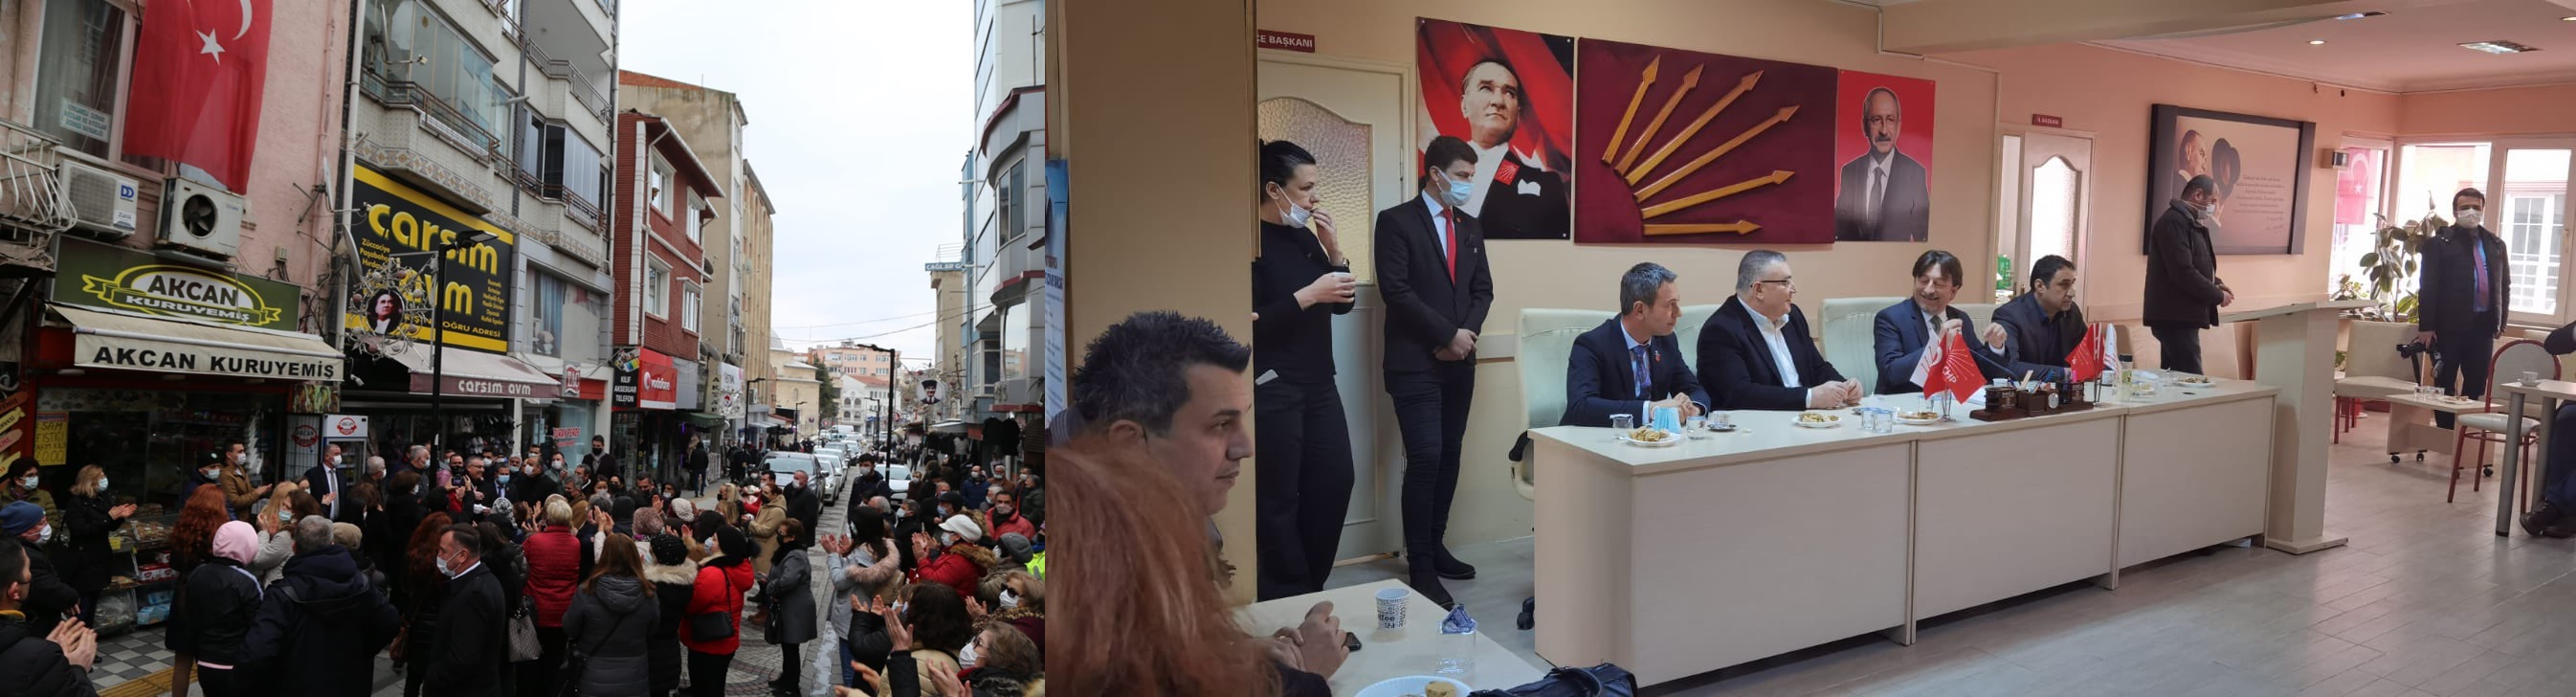 Kesimoğlu, Kırklareli CHP’de alkışlarla karşılandı 